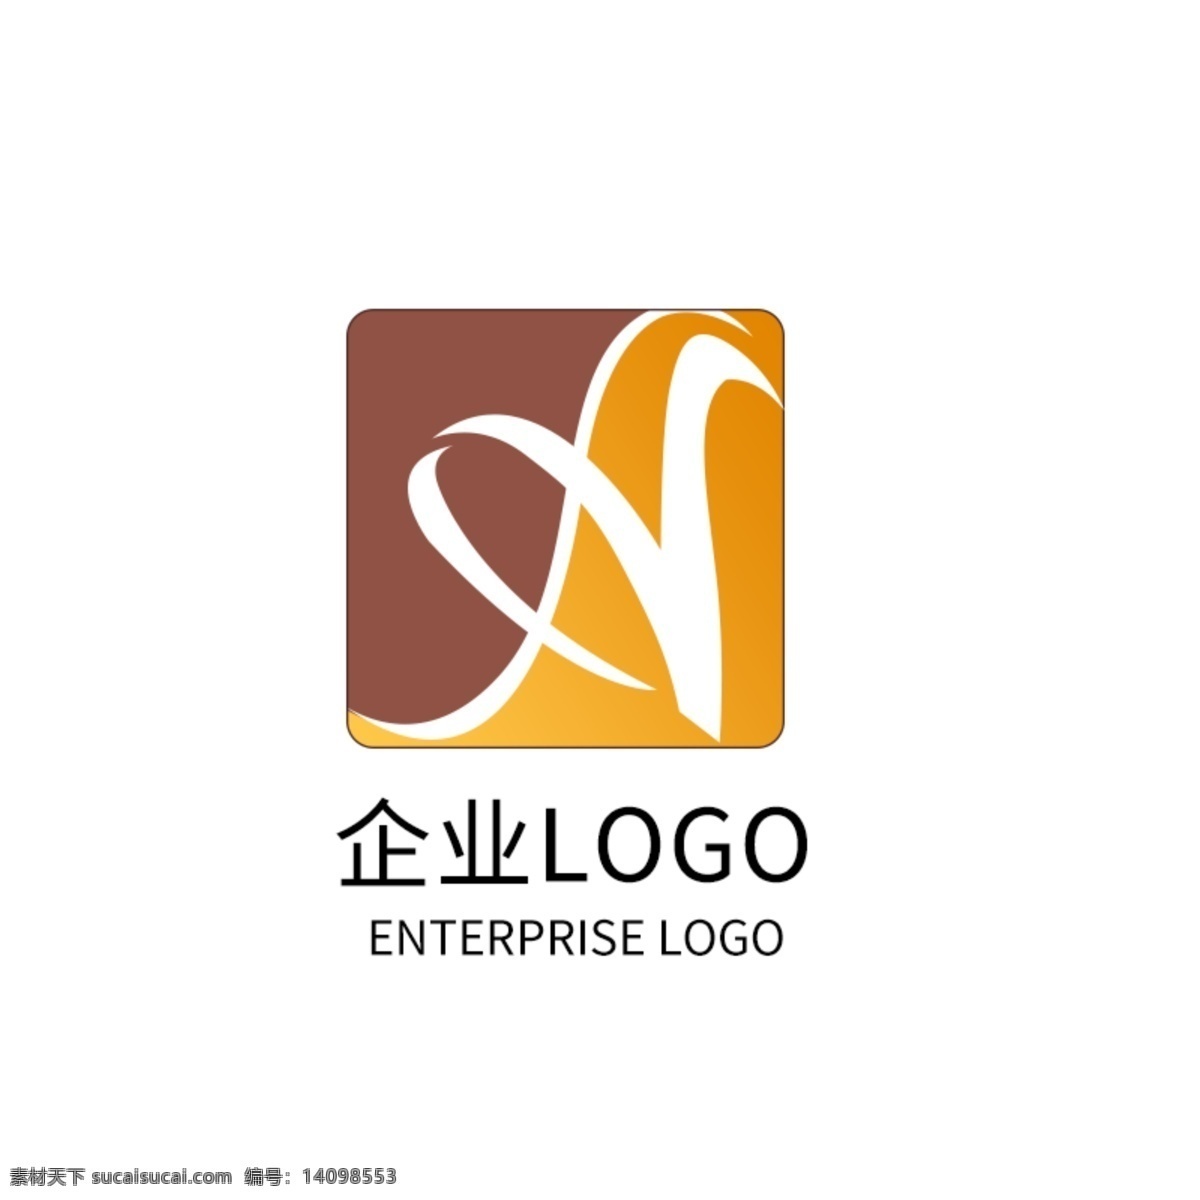 艺术 舞蹈 科技 公司 logo 企业 标志 企业标志 舞蹈logo 艺术logo logo设计 导游图